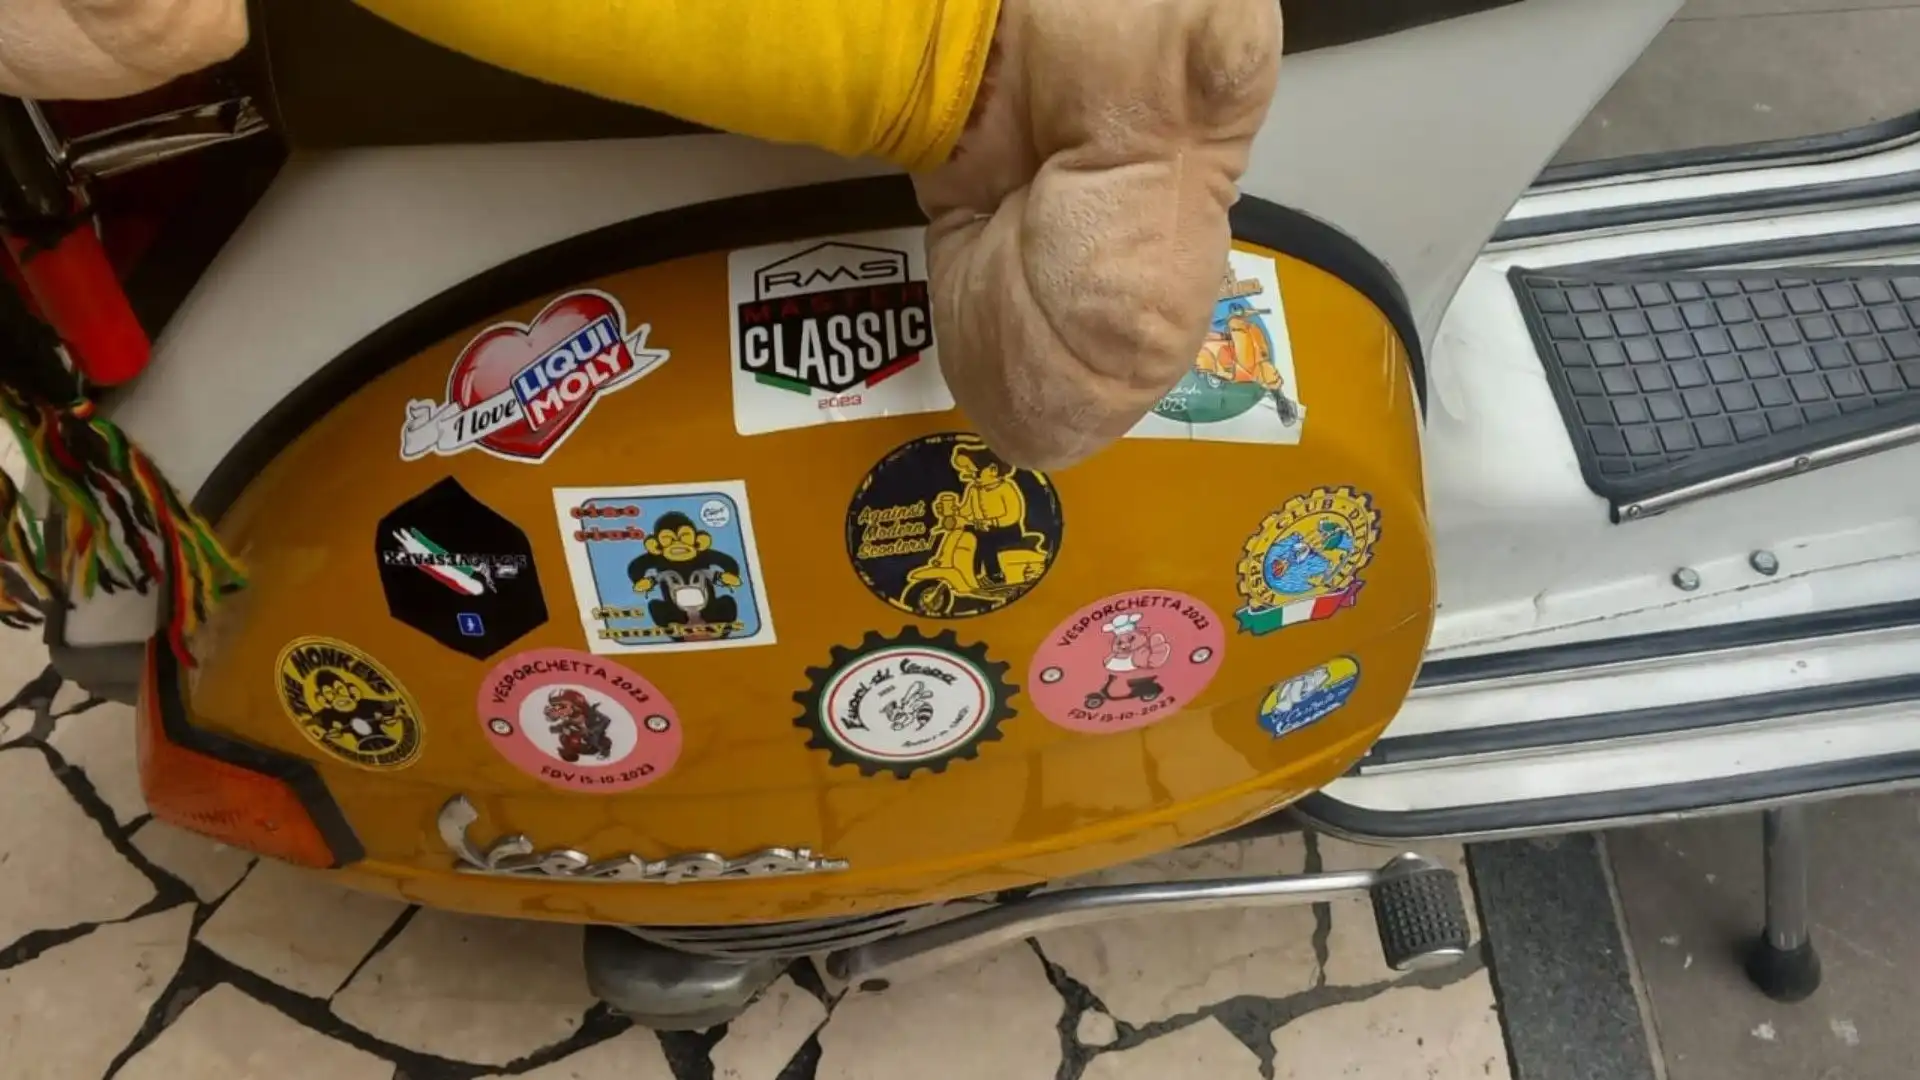 Veramente particolare l'allestimento di questo scooter